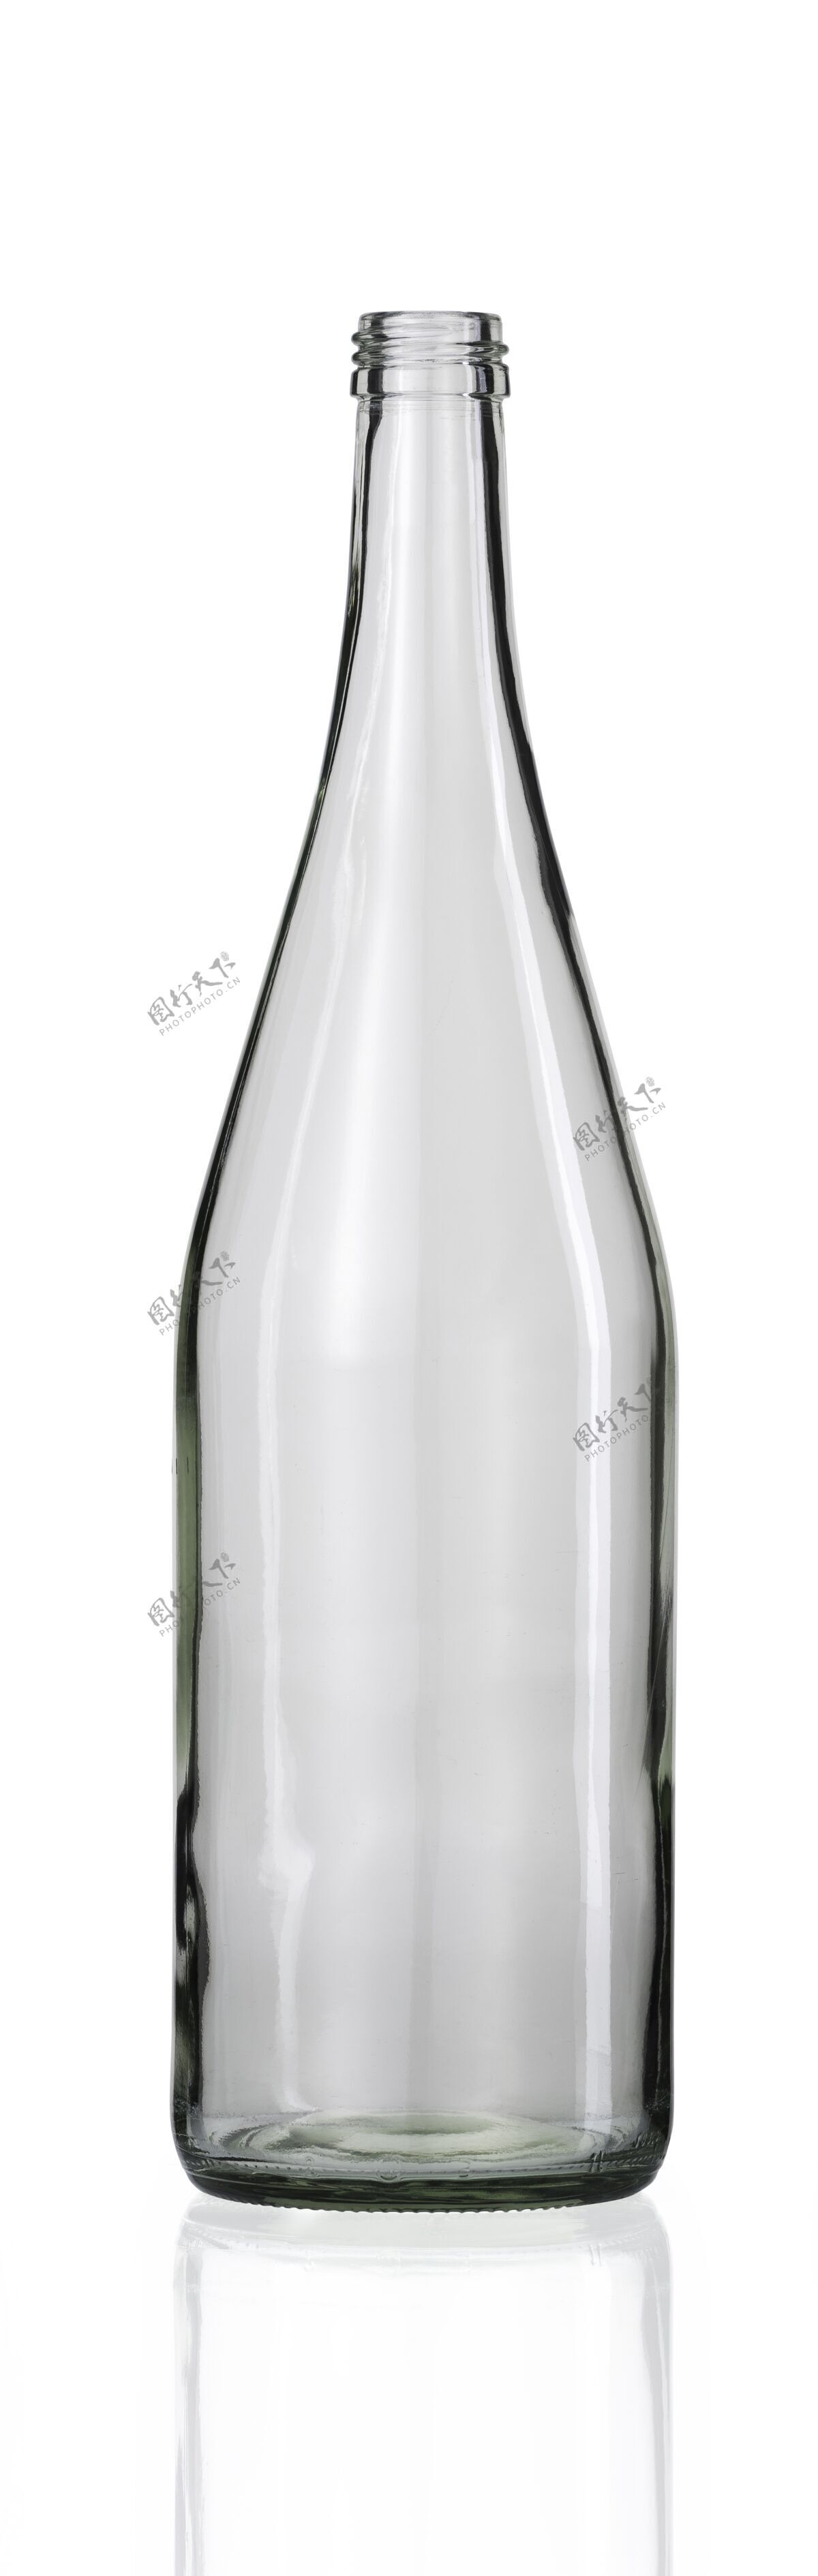 反射空玻璃瓶下面有一个白色的倒影透明酒精葡萄酒